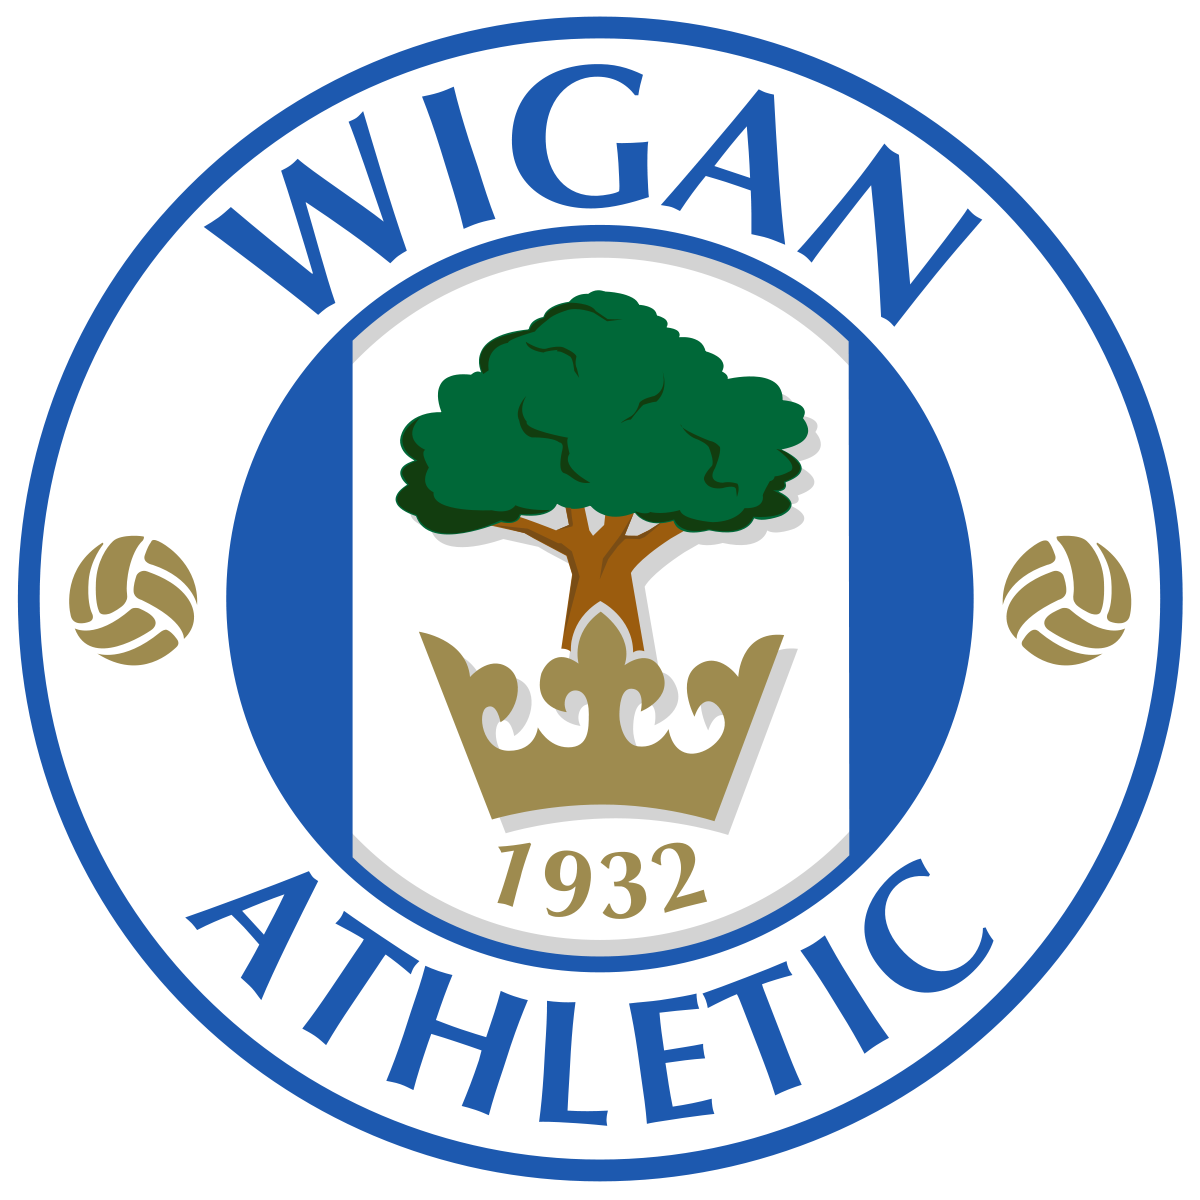 Logo foot de Wigan